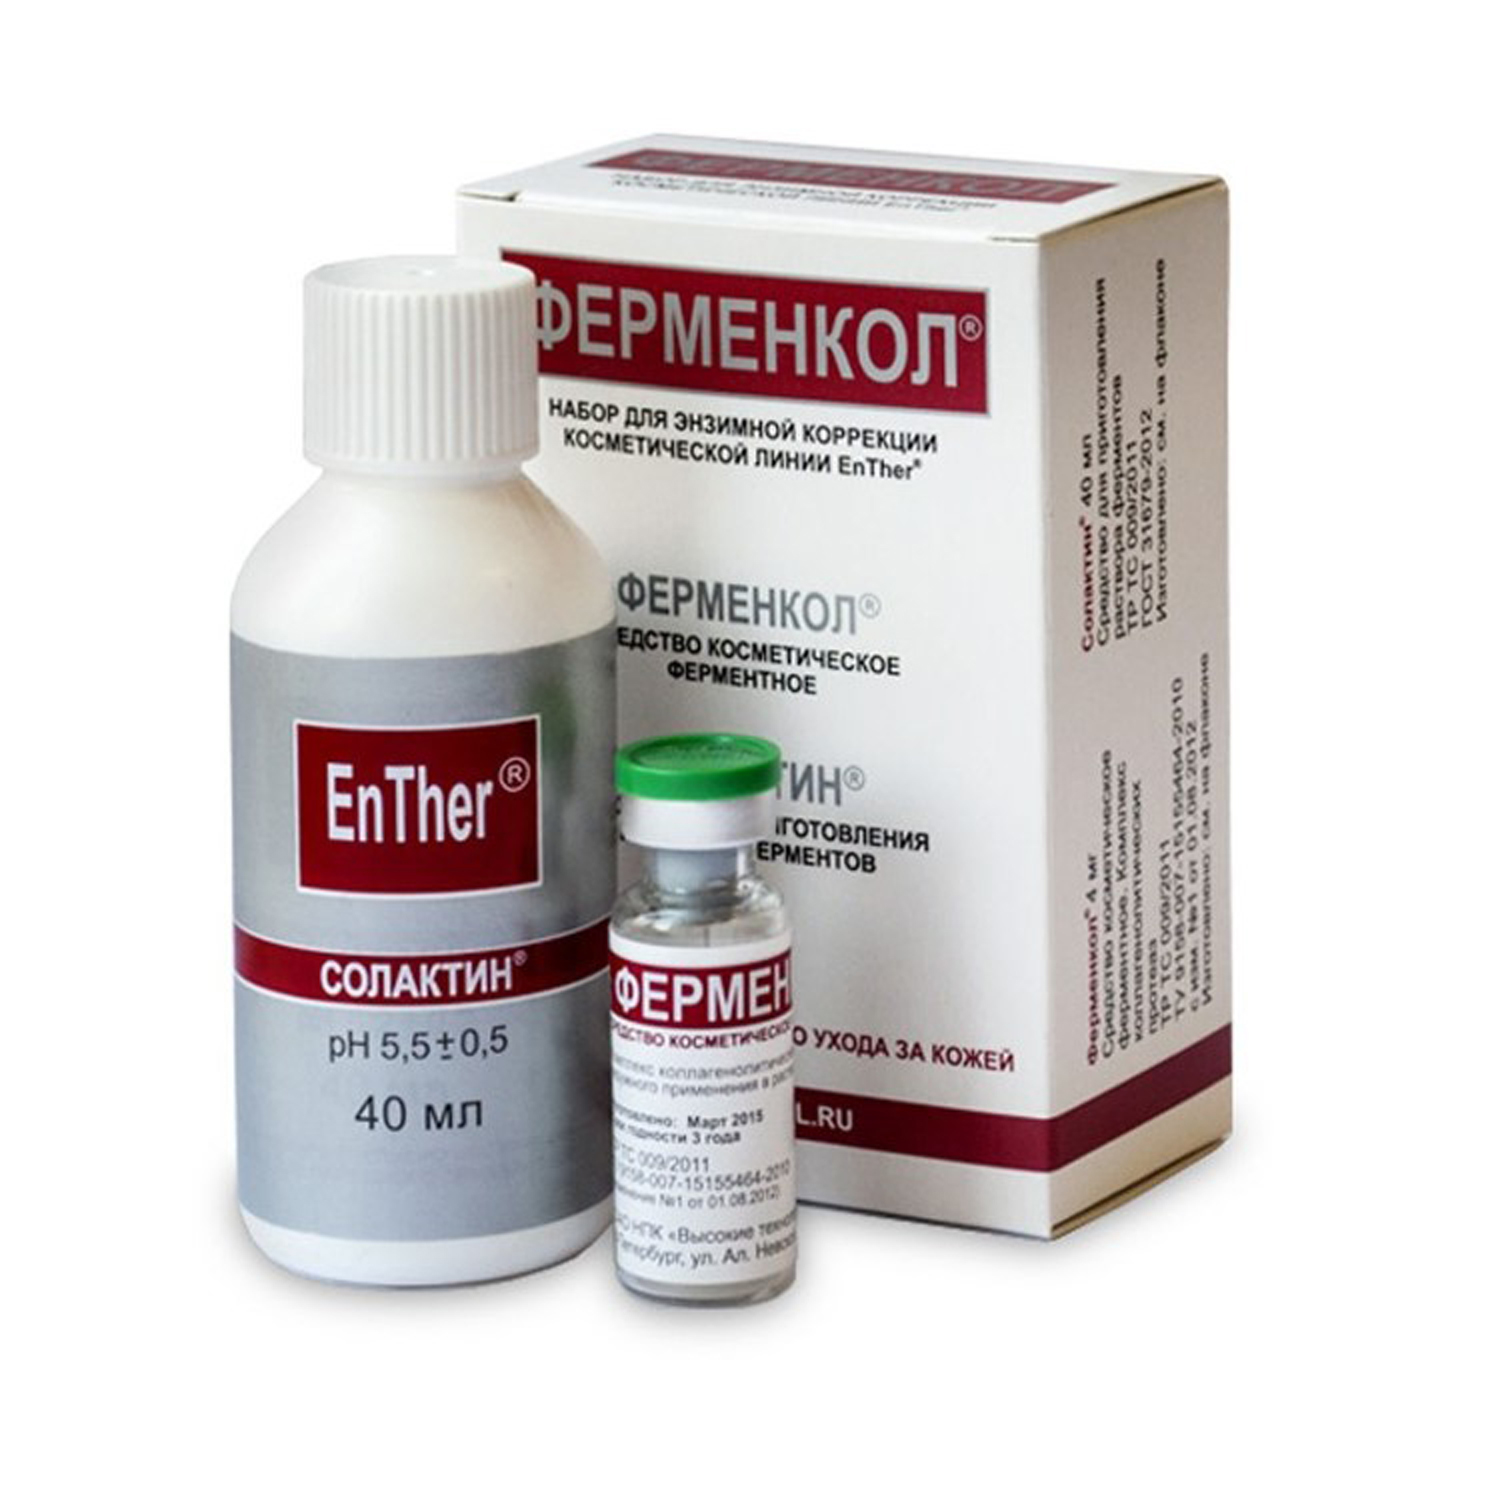 Набор для энзимной коррекции Ферменкол 4 мг + Солактин 40 мл - фото 2